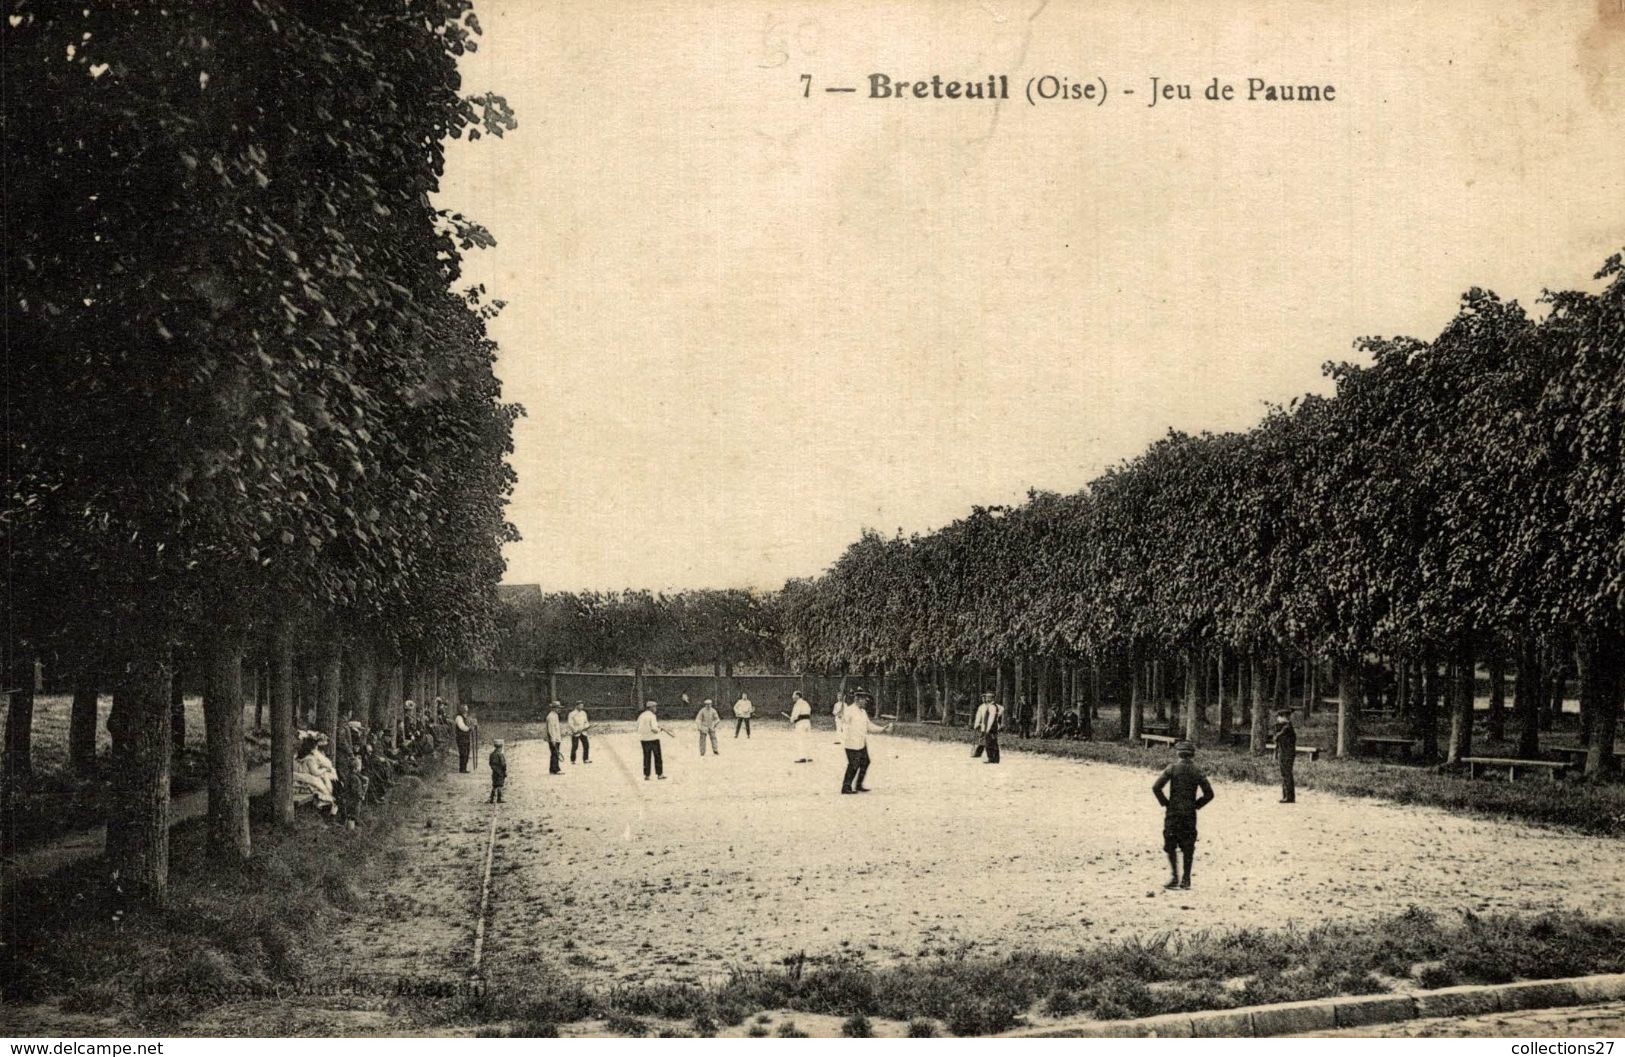 60-BRETEUIL- JEU DE PAUME - Breteuil